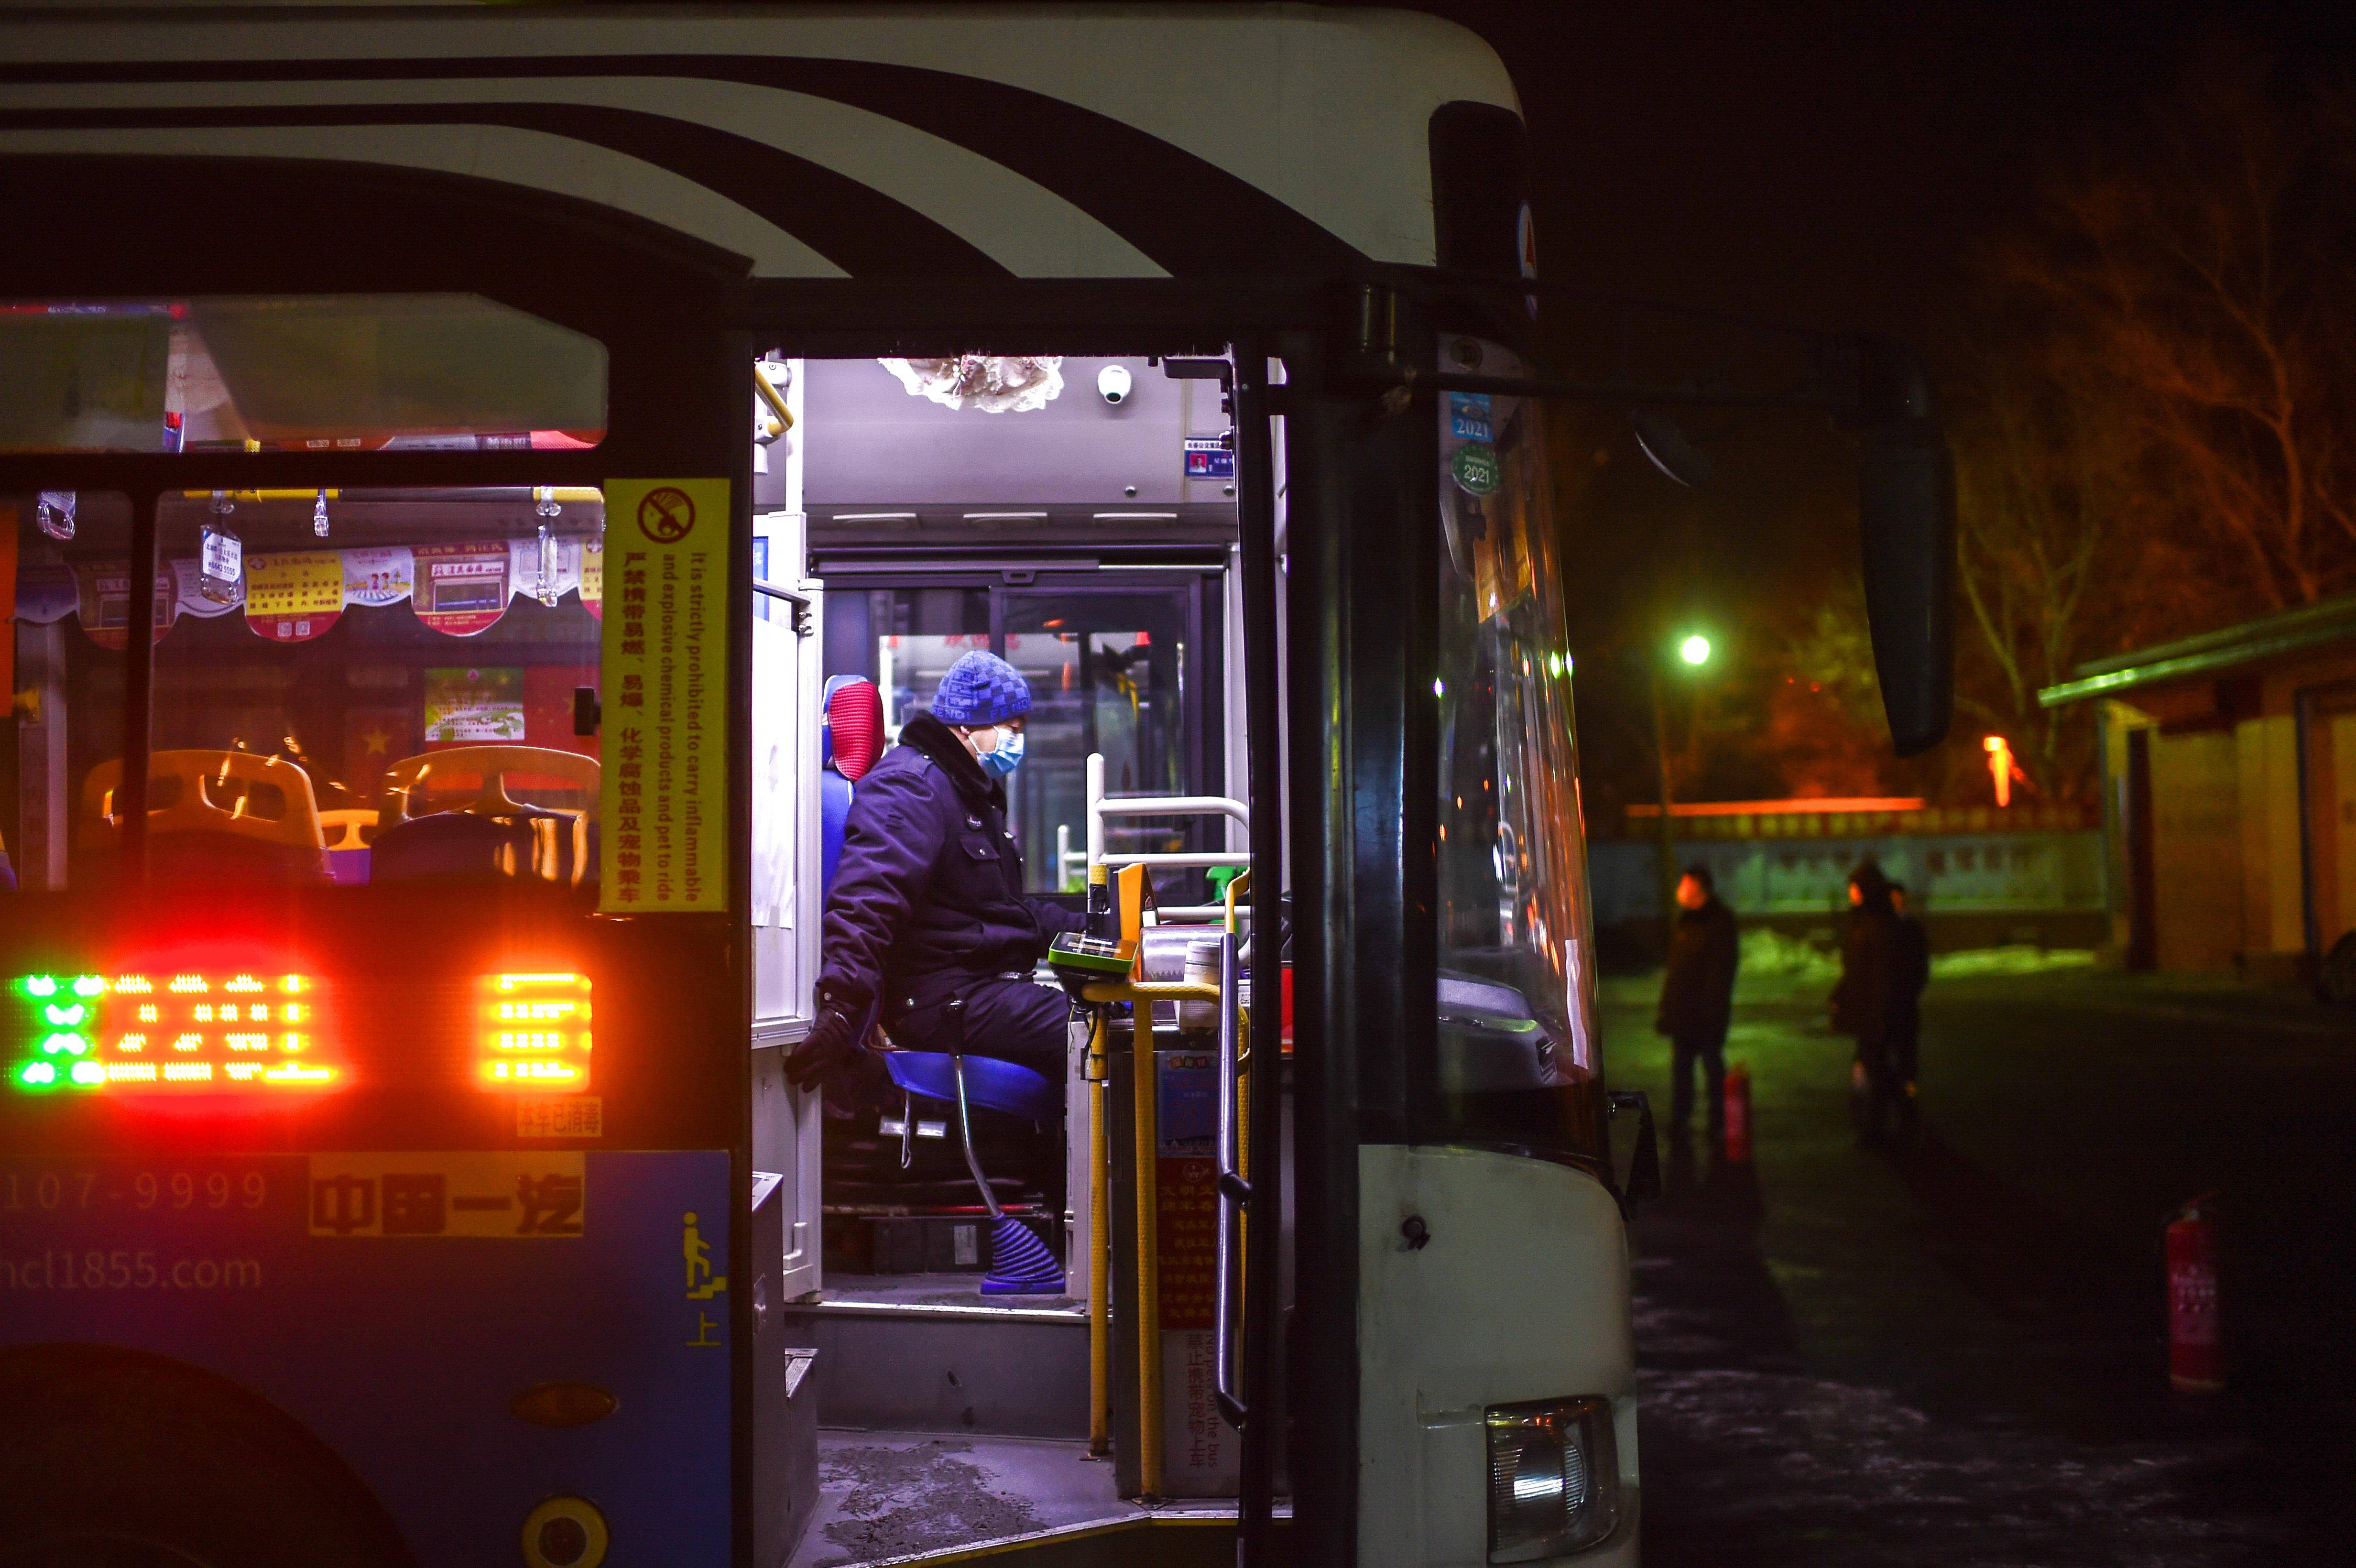 公交车夜里图片